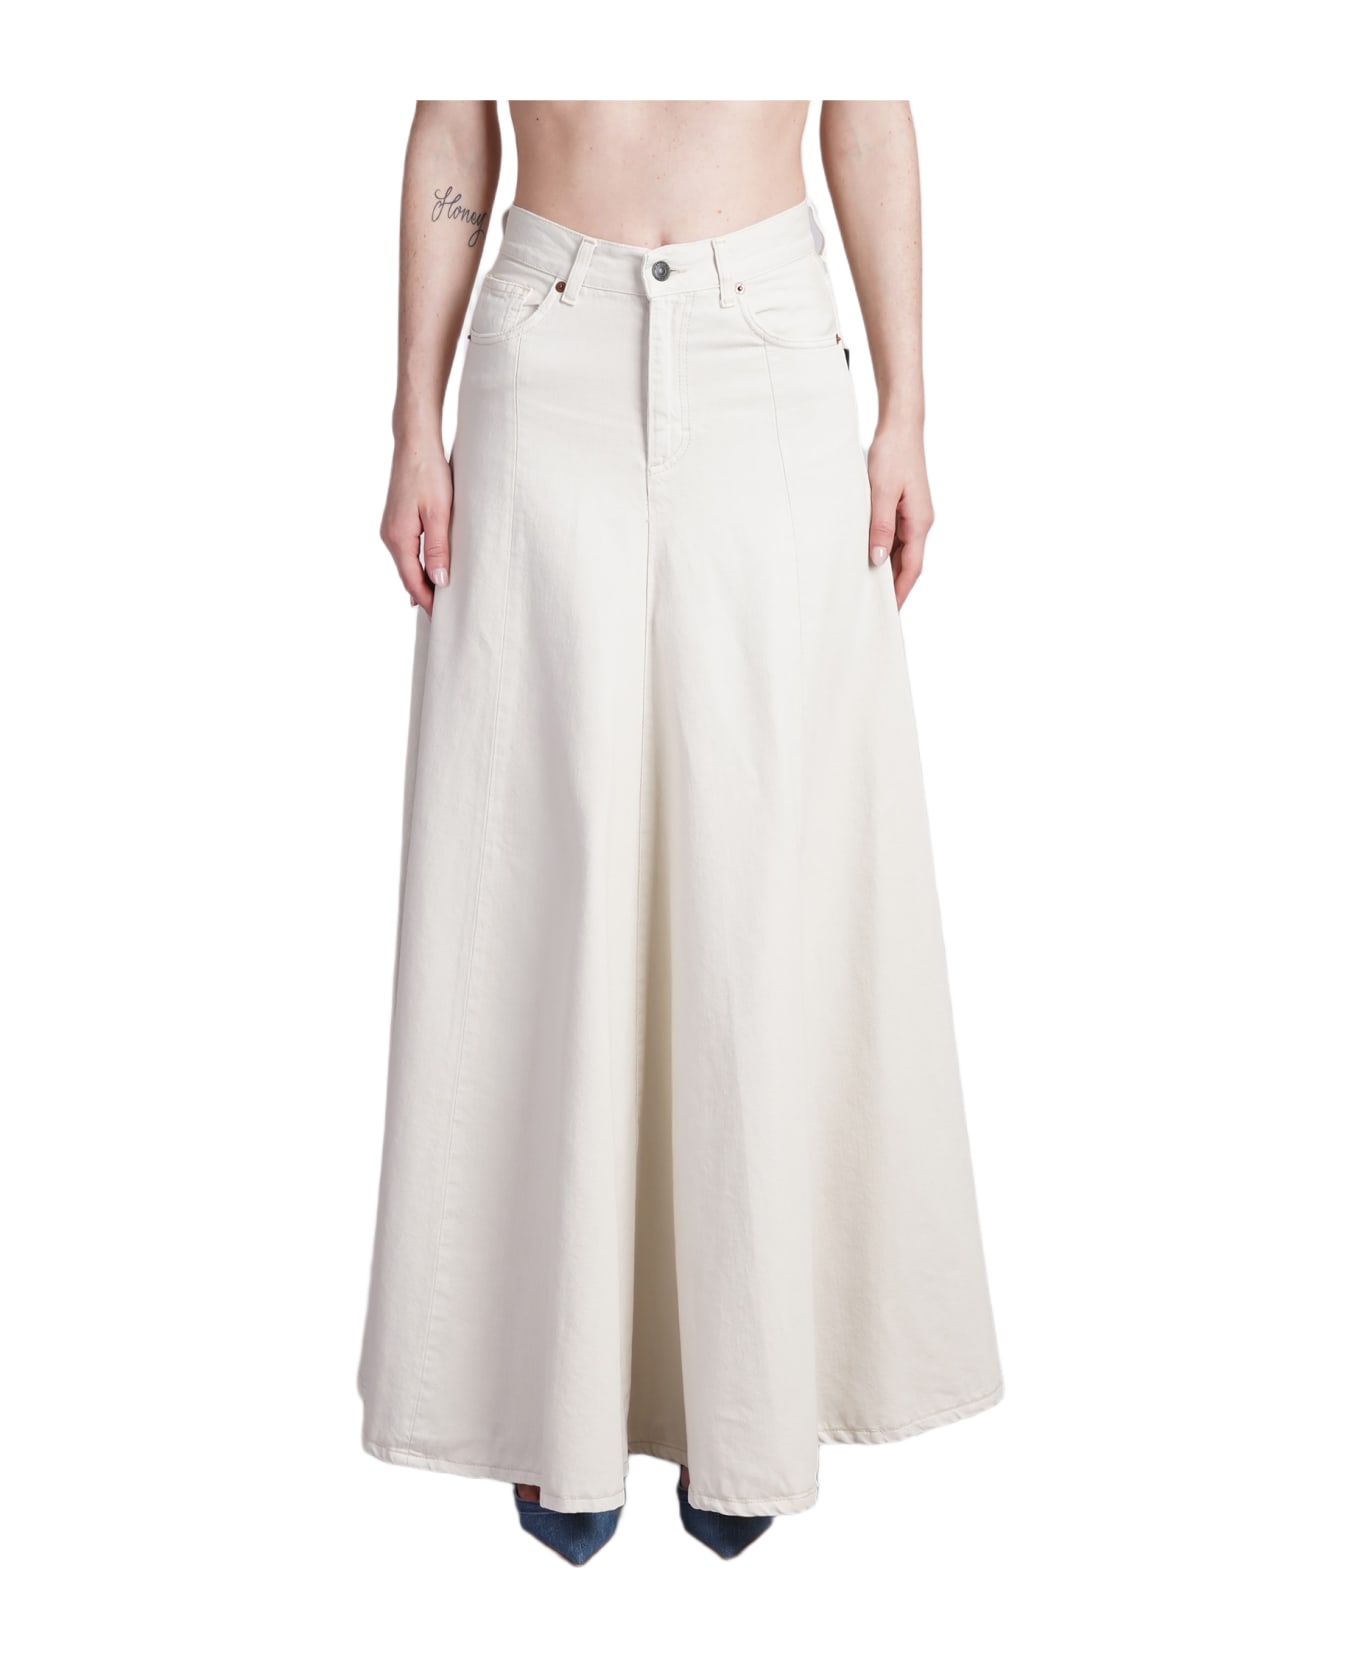 Haikure Serenity Skirt In Beige Cotton - beige